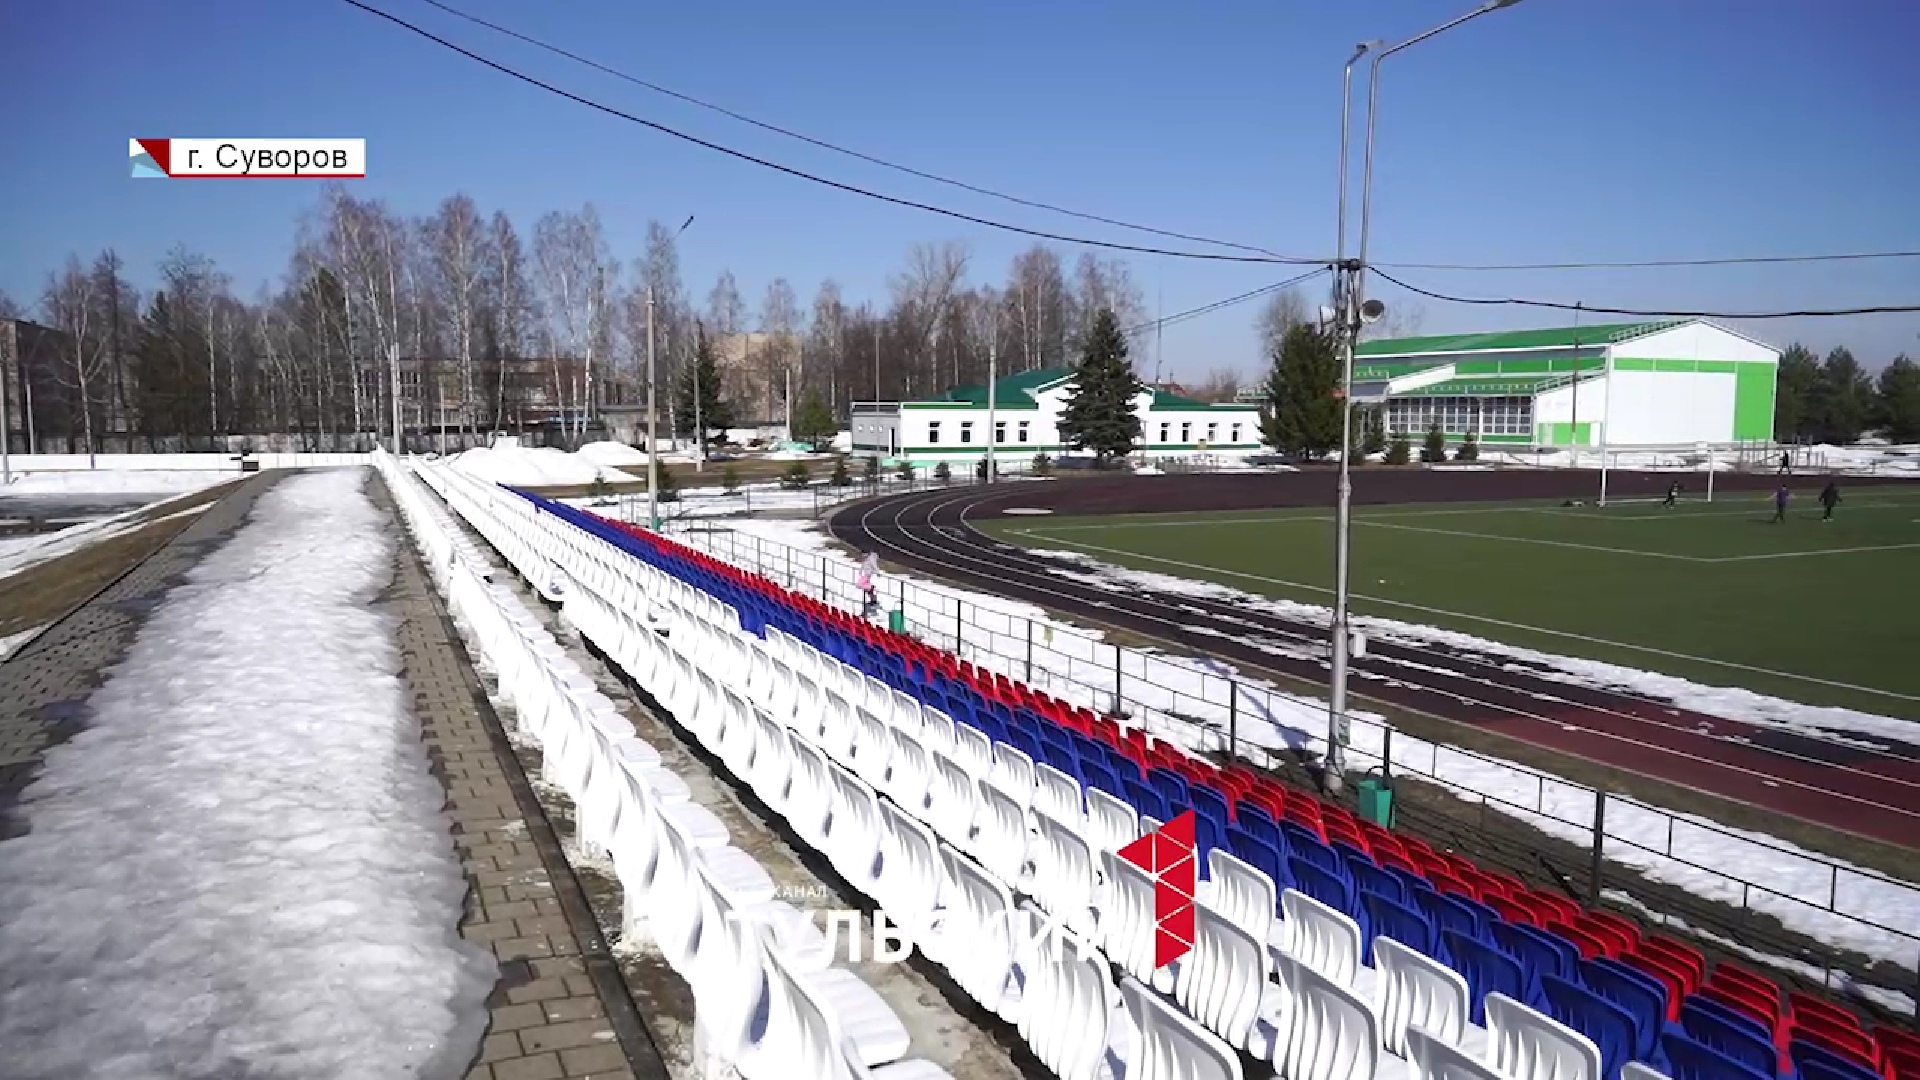 Суворов превратился в воспитательную площадку для будущих звезд спорта